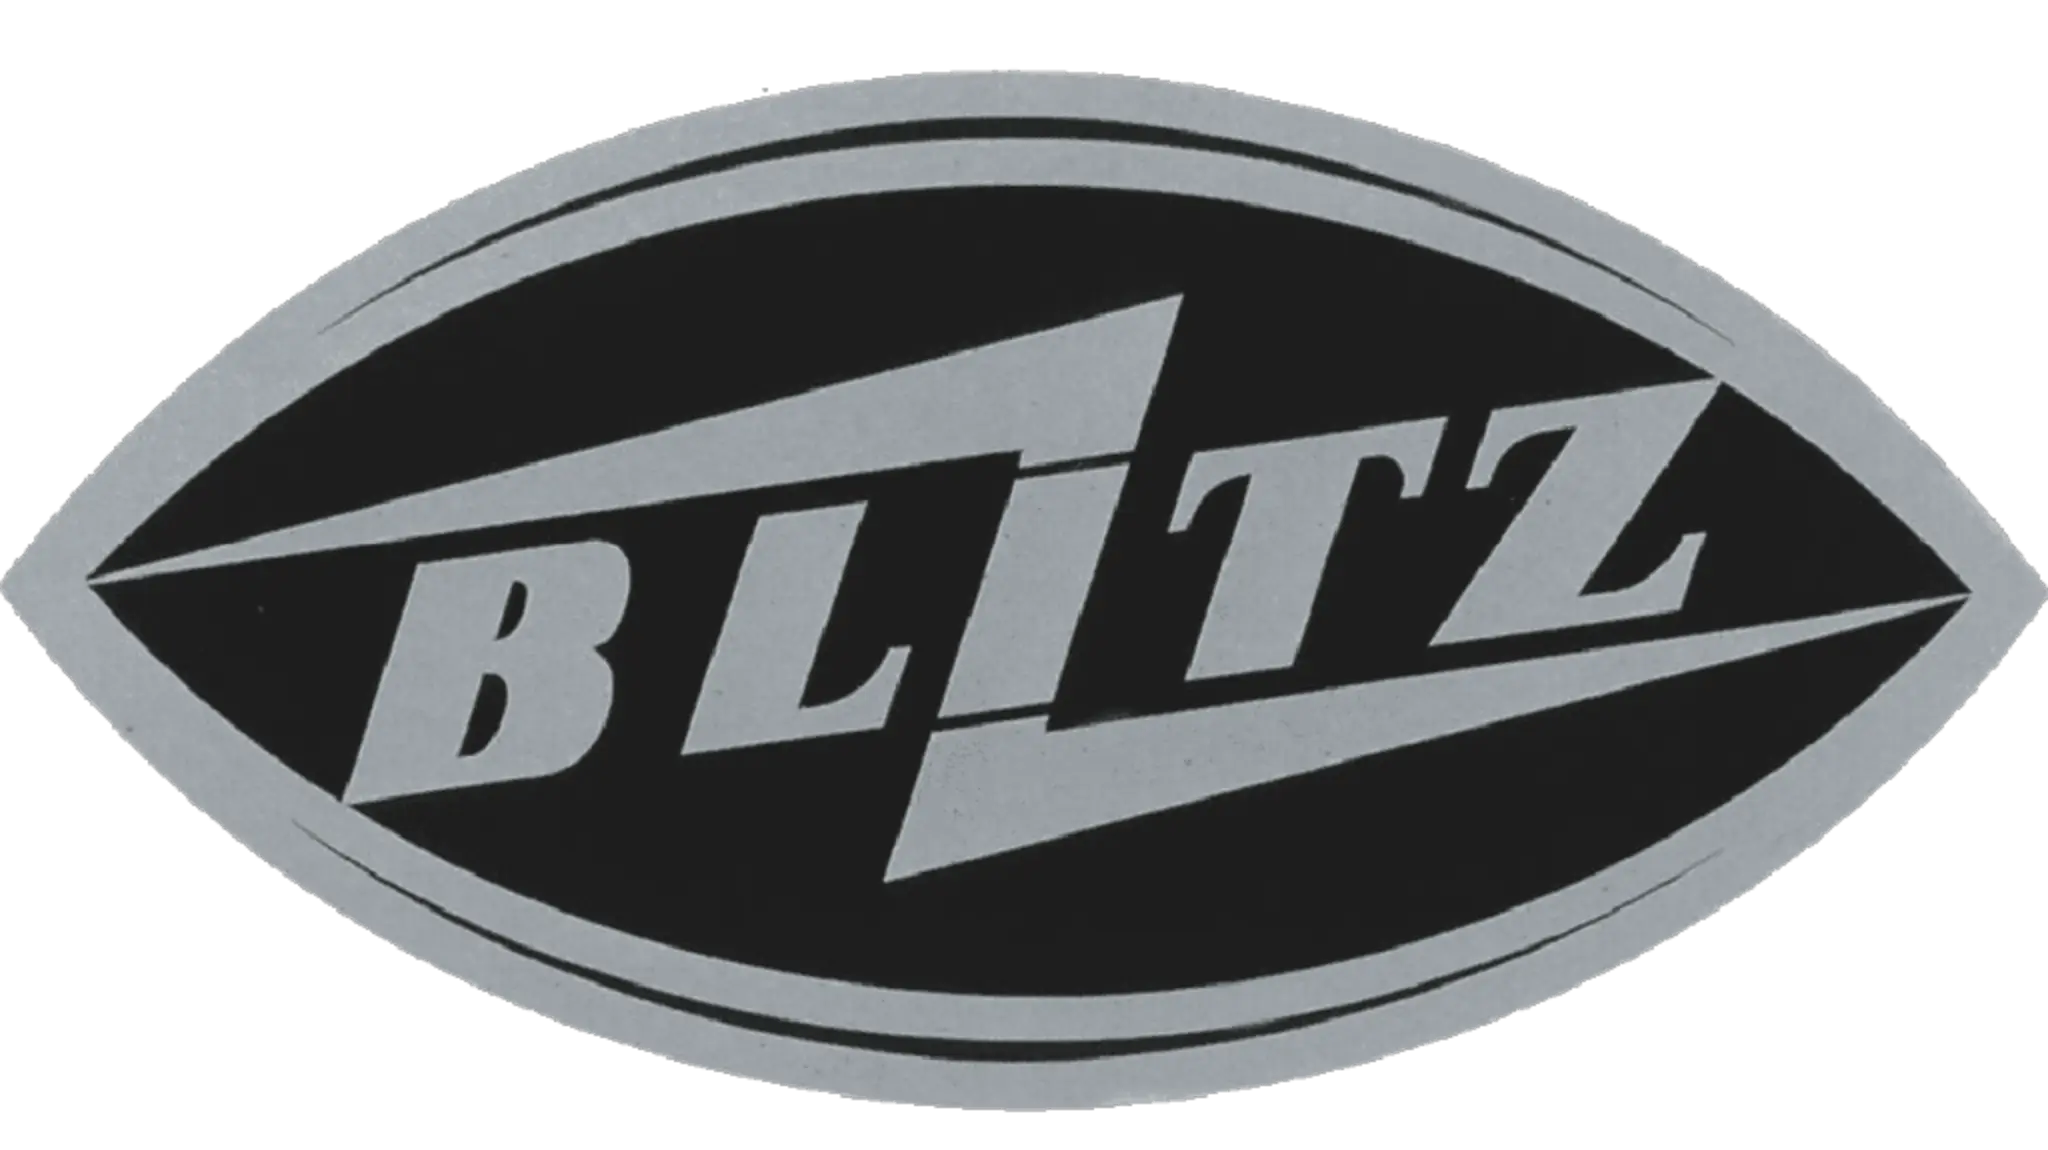 Uma das variantes do logo "Opel mais blitz". (1930-1936)